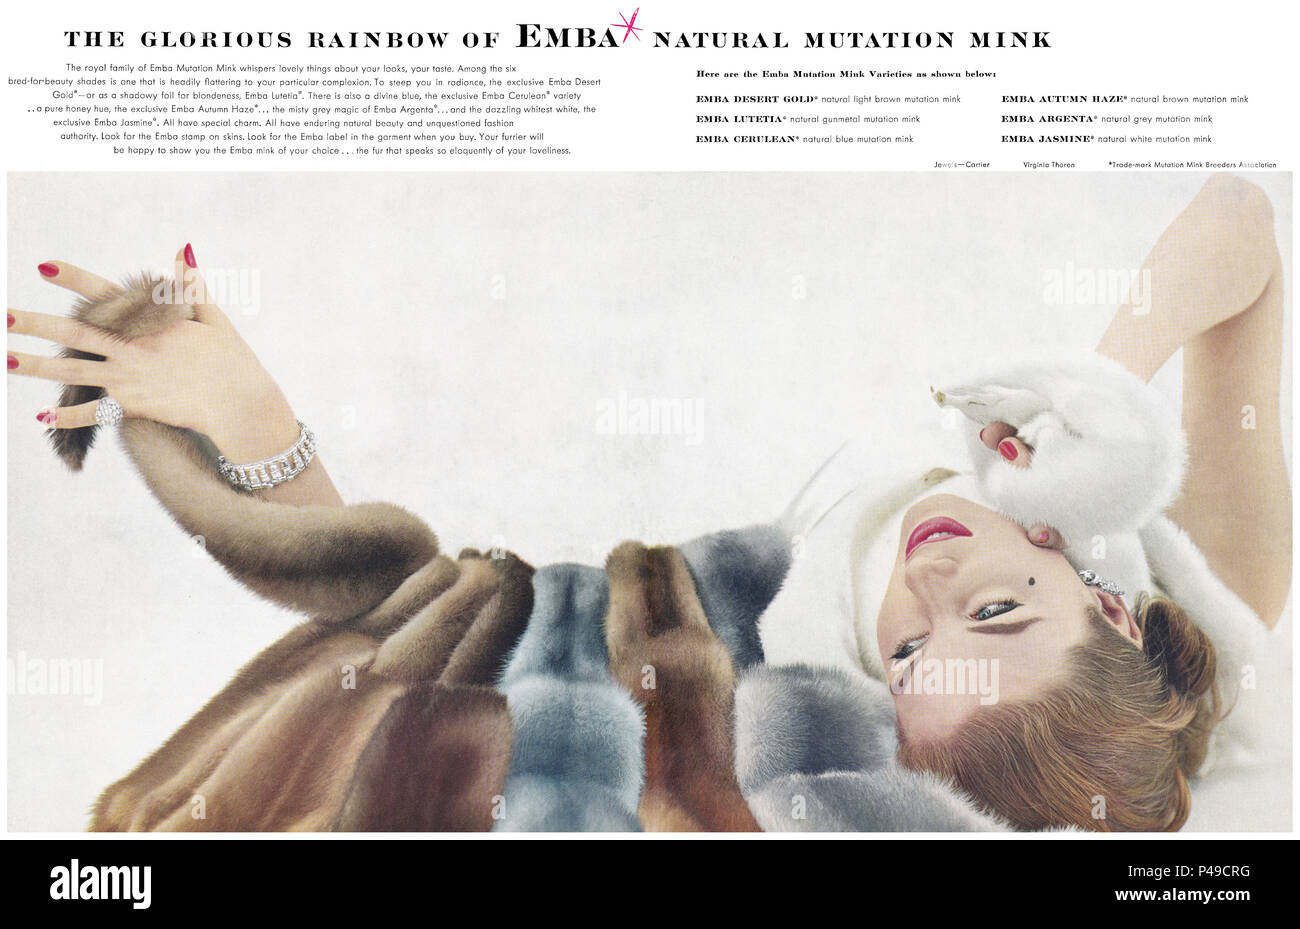 1955 L'annonce d'une mutation naturelle Emba le vison. Banque D'Images